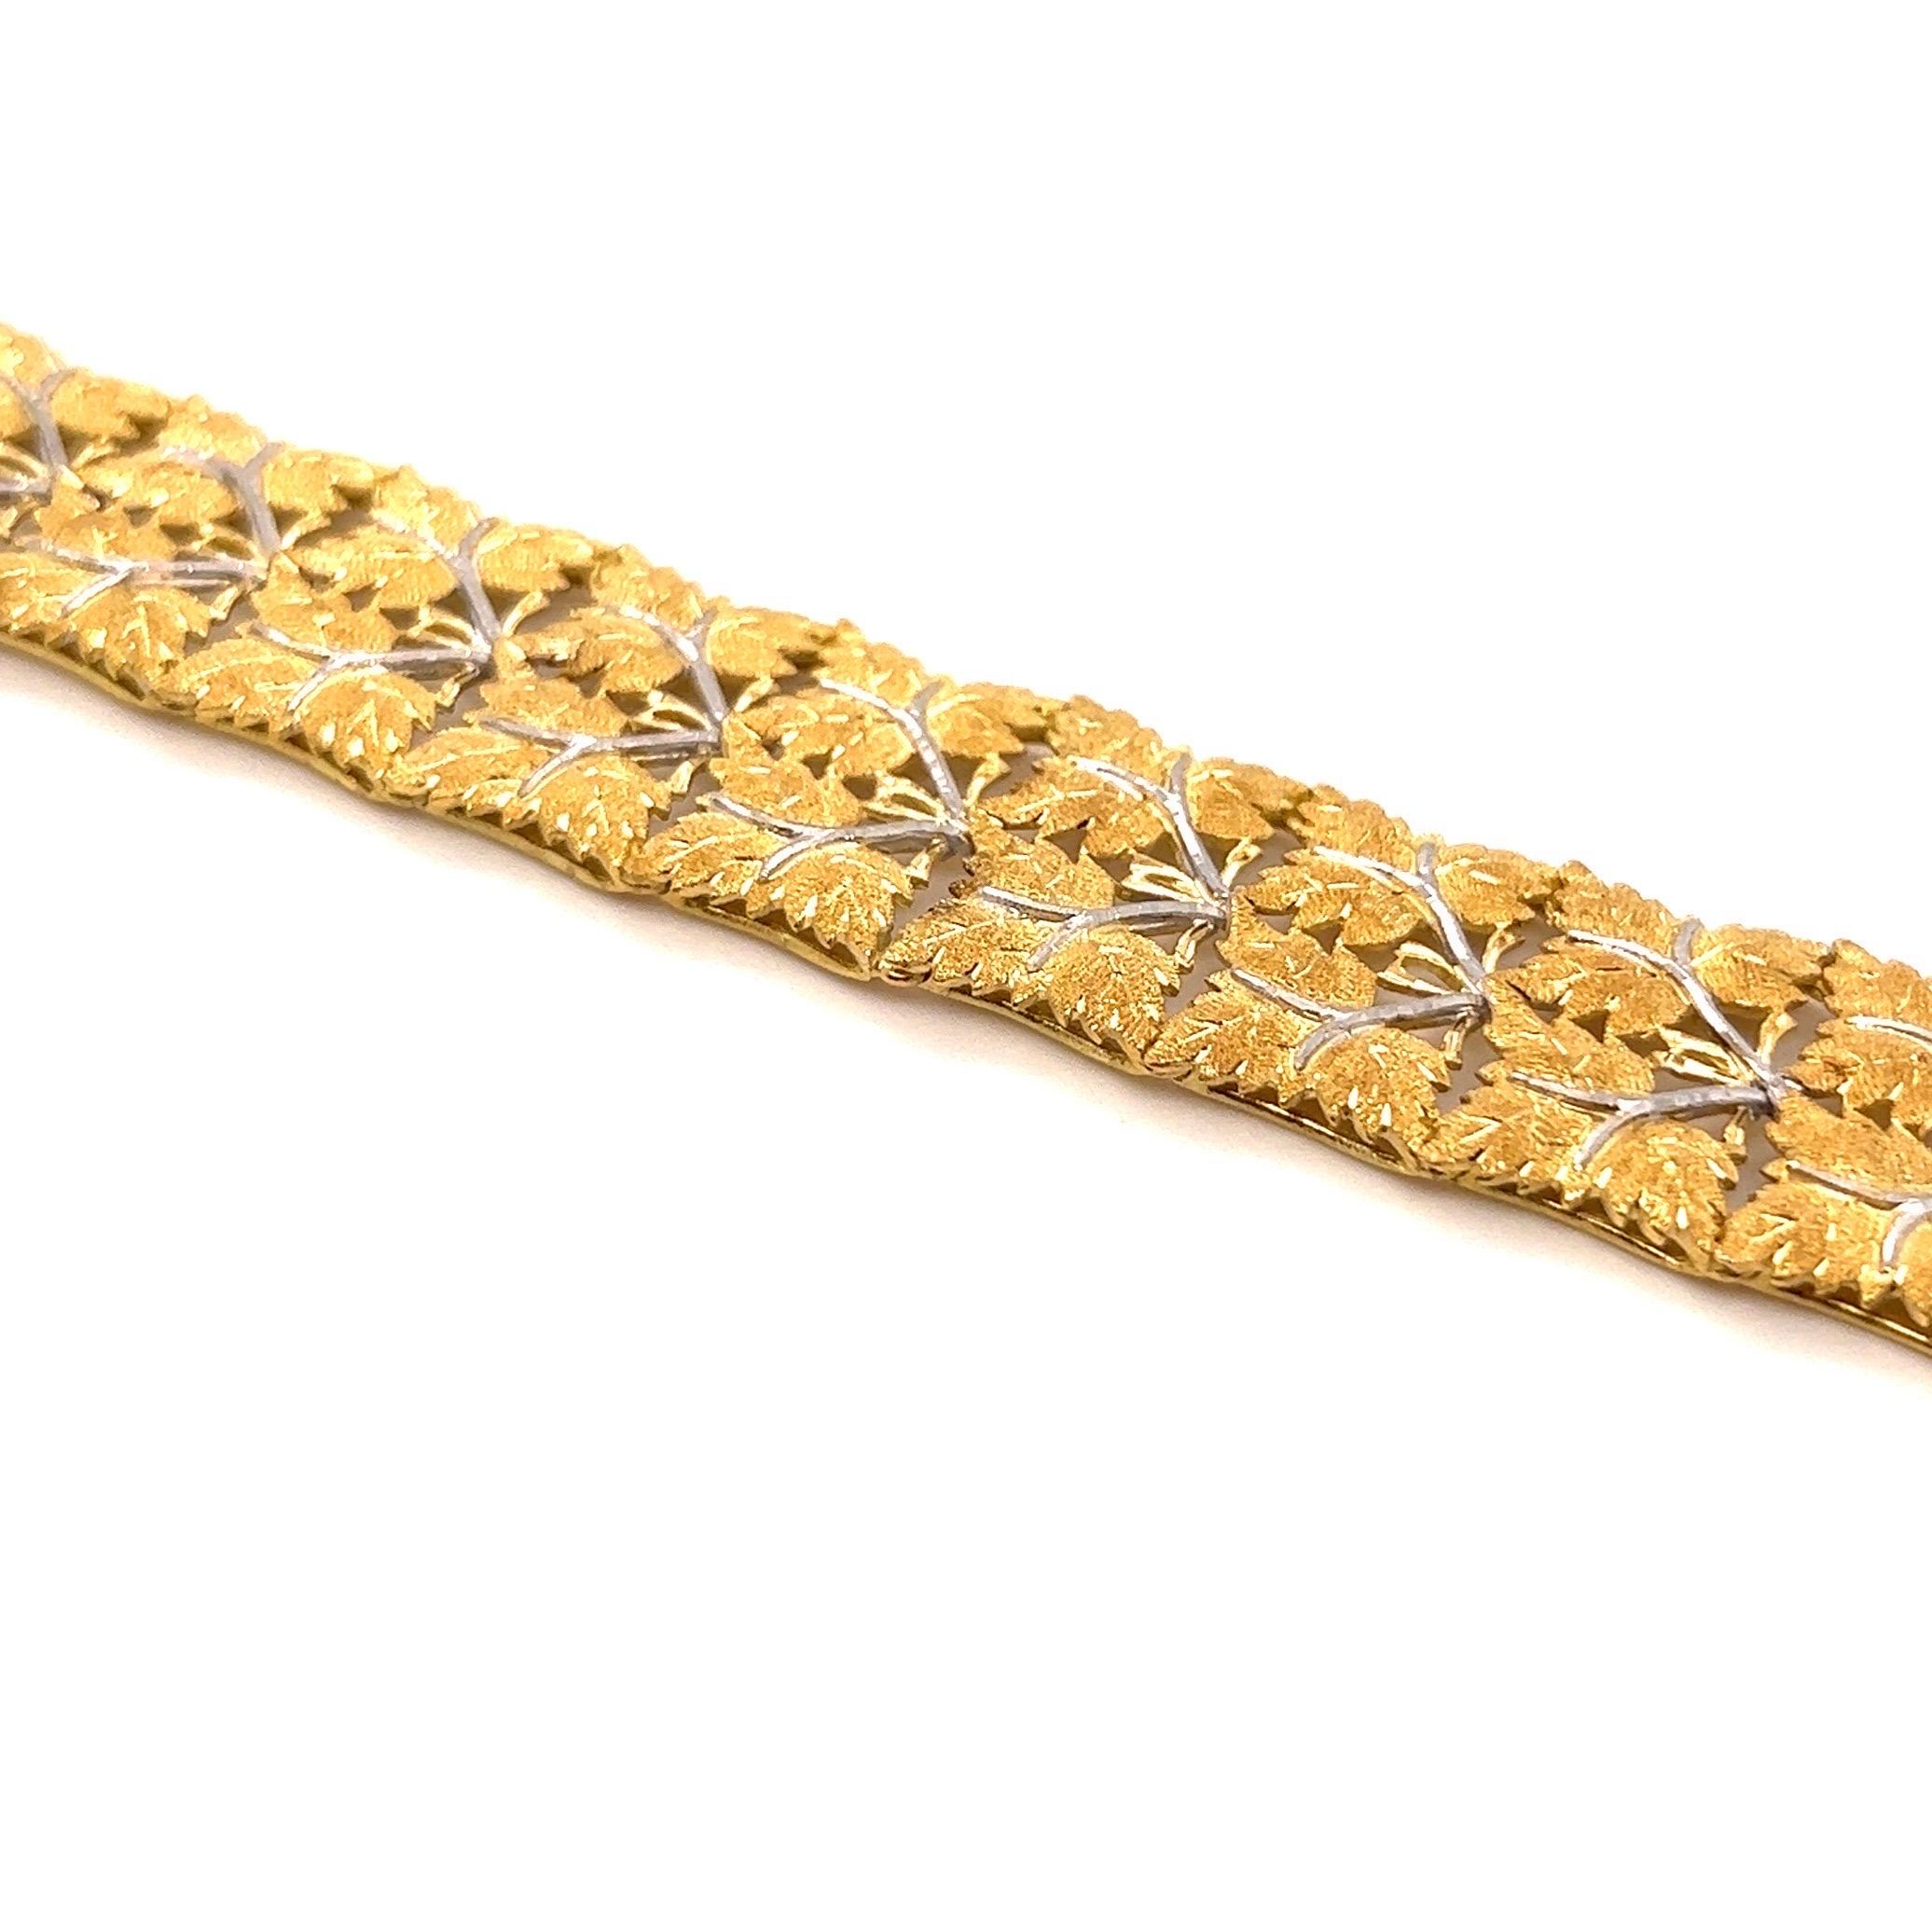 Délicat et élégant bracelet en or jaune et blanc 18 carats de Mario Buccellati, années 1950.

Réalisé de main de maître en or 18 carats, ce bracelet à maillons filigranes est composé de feuilles de vigne en or jaune finement texturées et mates, les